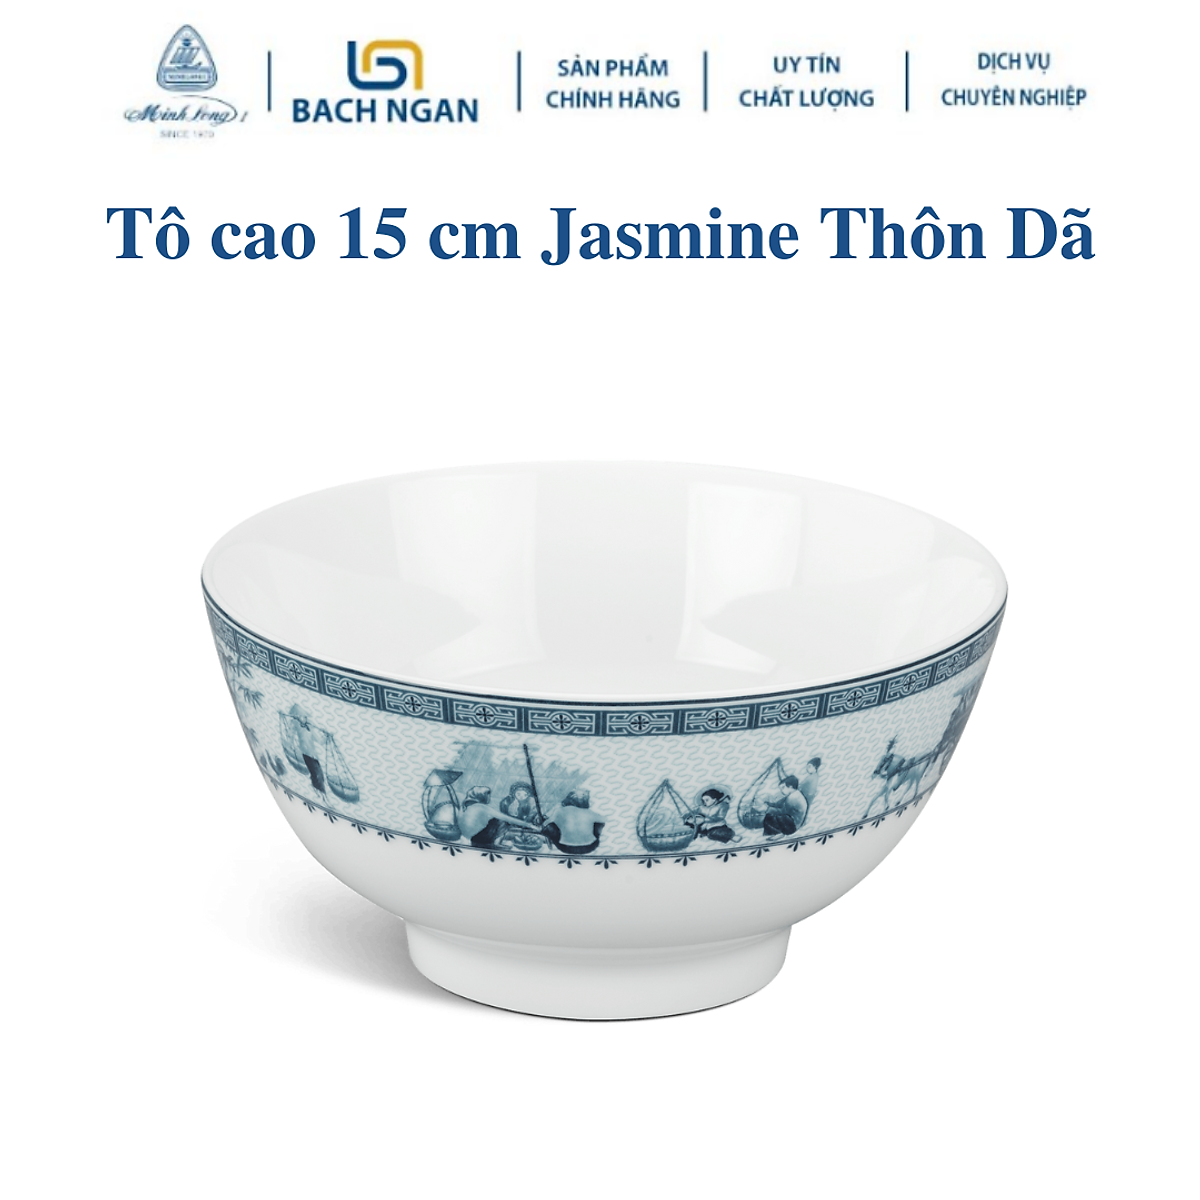 Tô cao Minh Long 15 cm Jasmine Thôn Dã - Bằng sứ, Hàng Đẹp, Cao ...